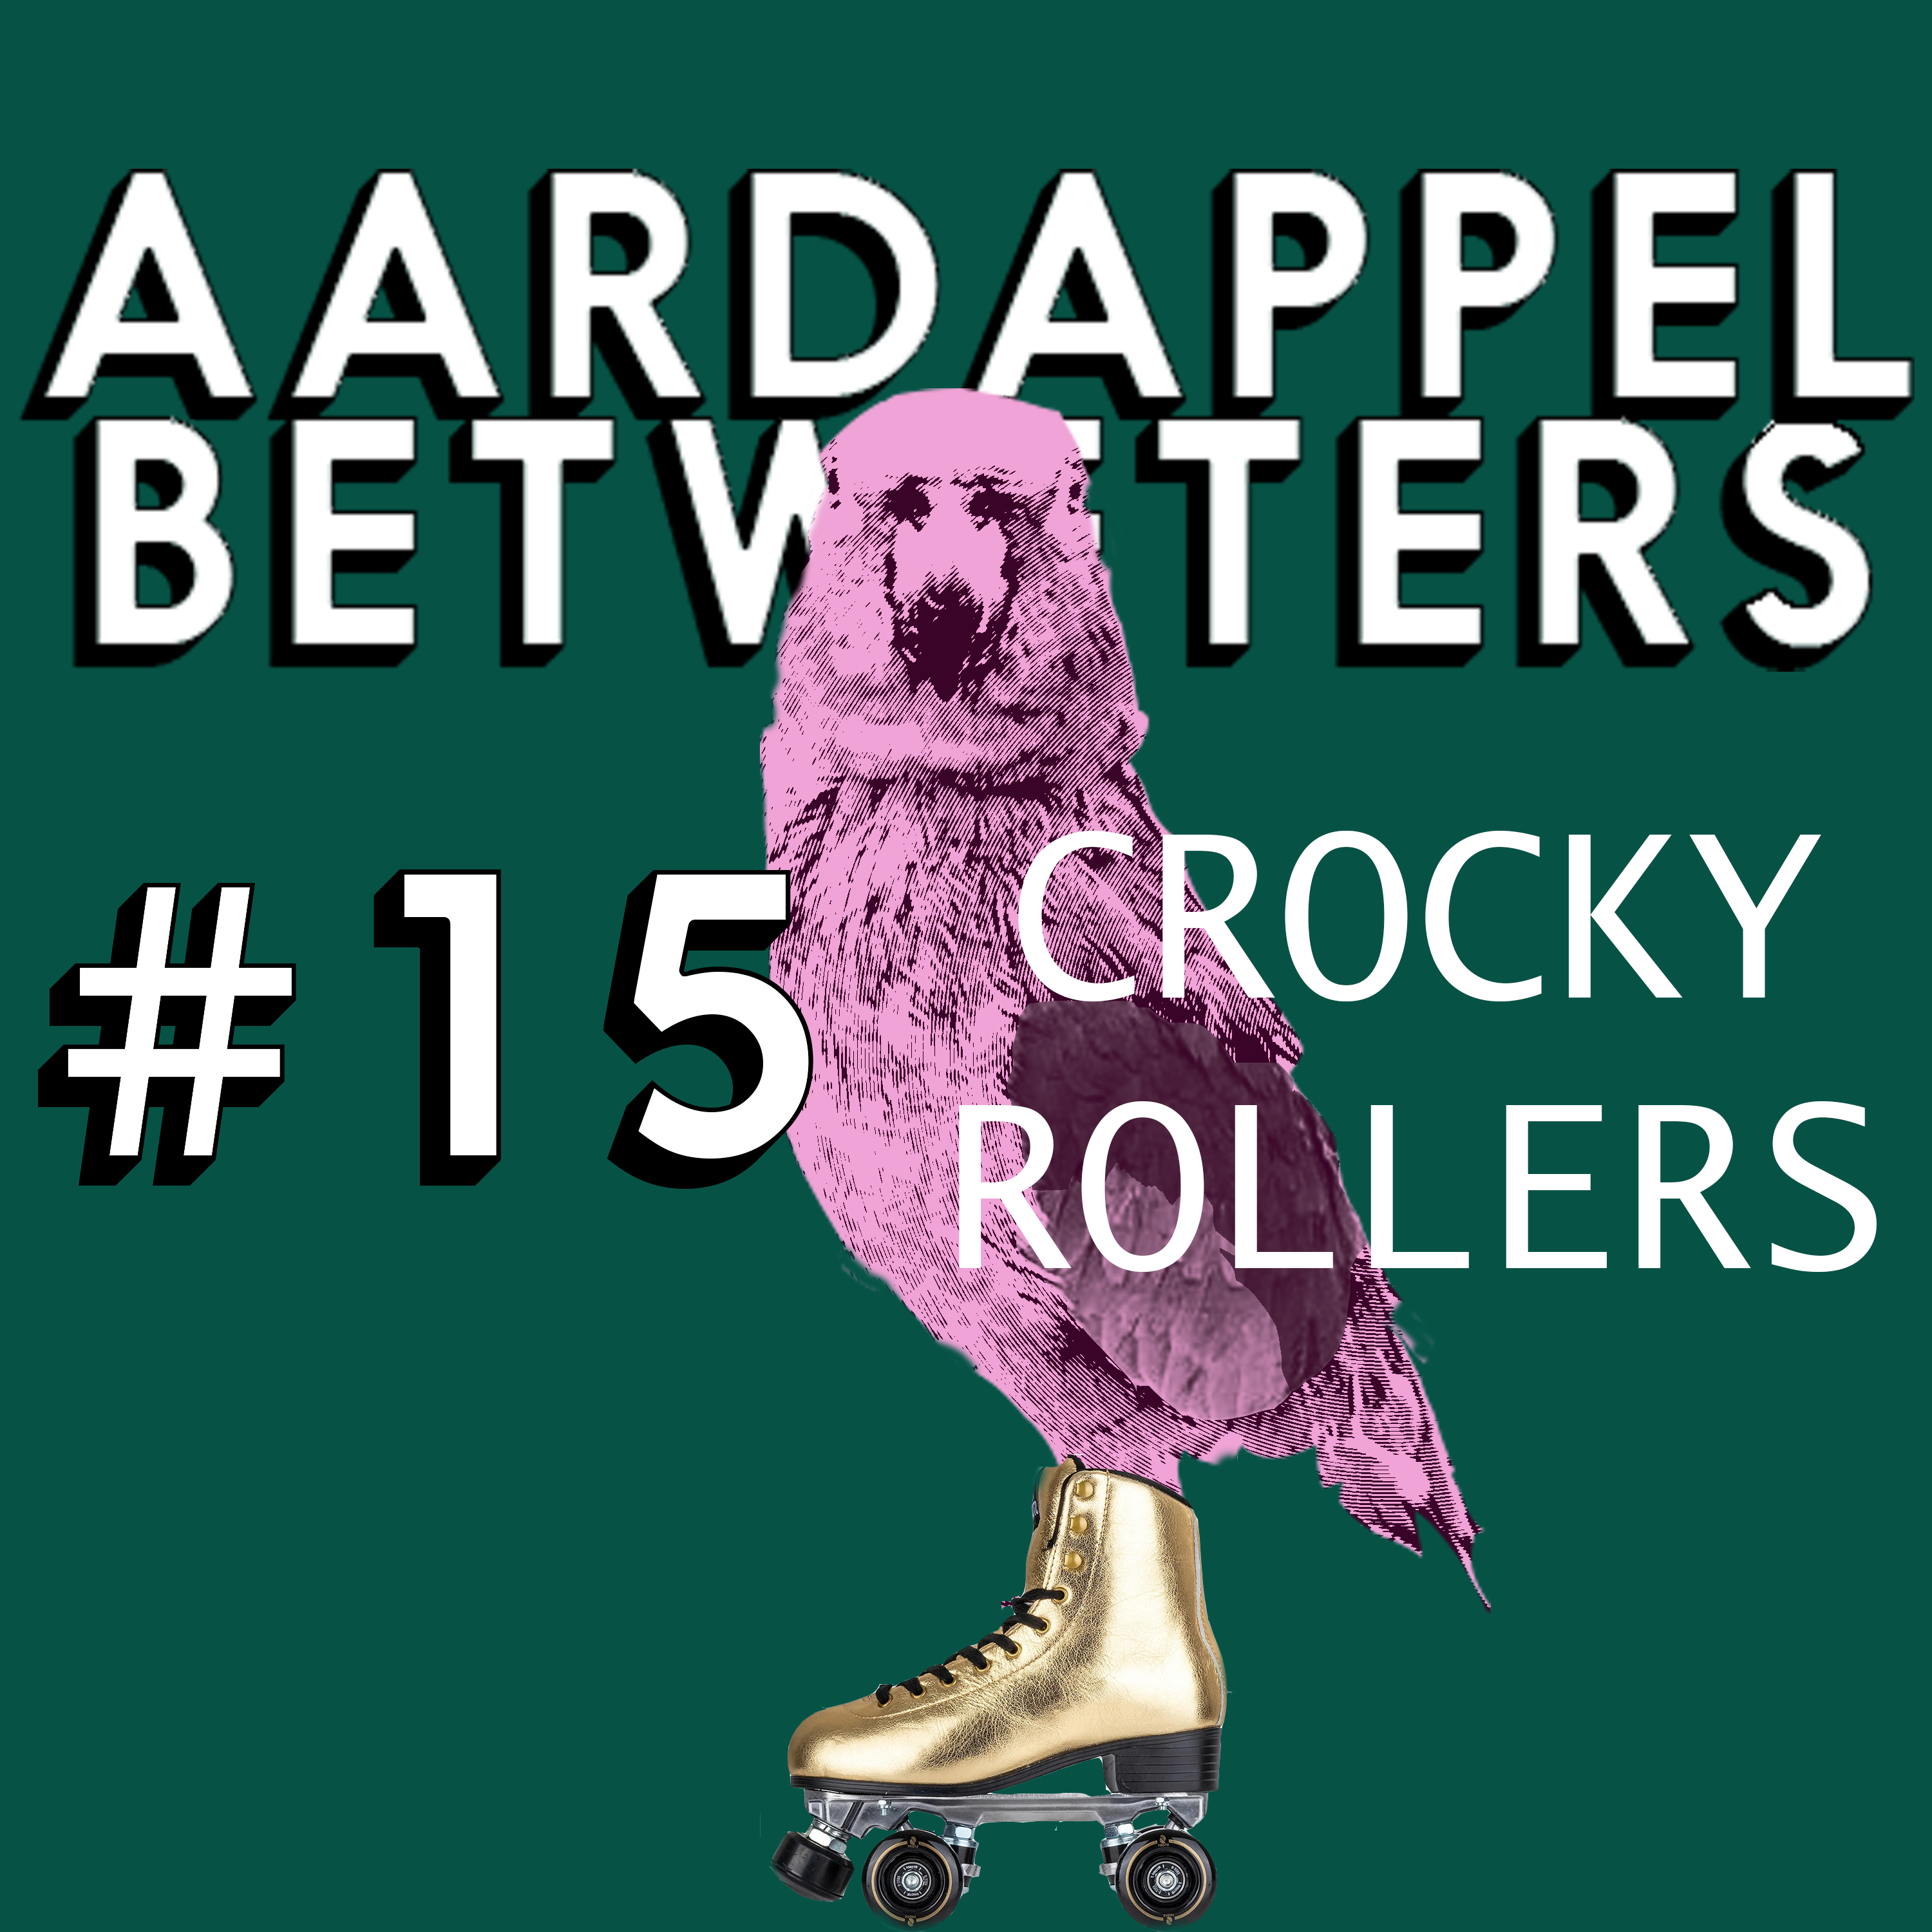 #15 – Croky Rollers